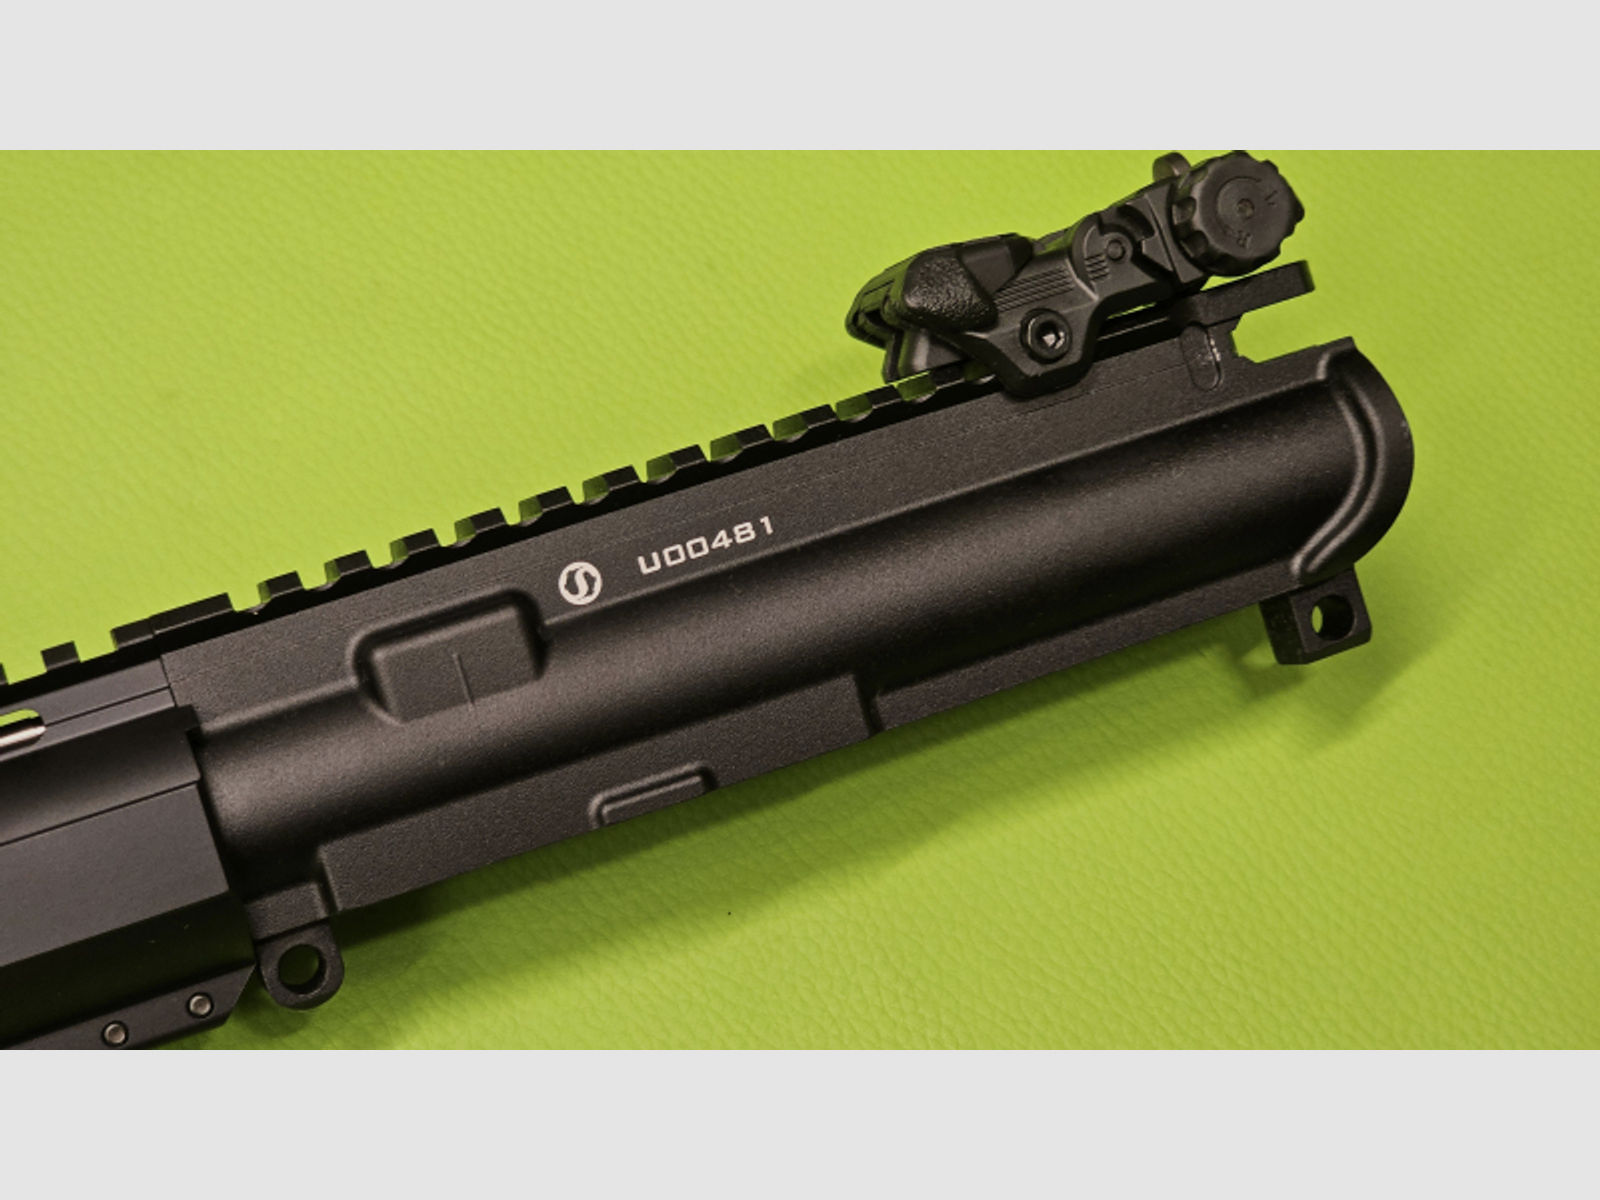 Wechsellauf / Wechselsystem Schmeisser AR-15 AR15 M5F 16,75" mit verstellbarer Gasabnahme!